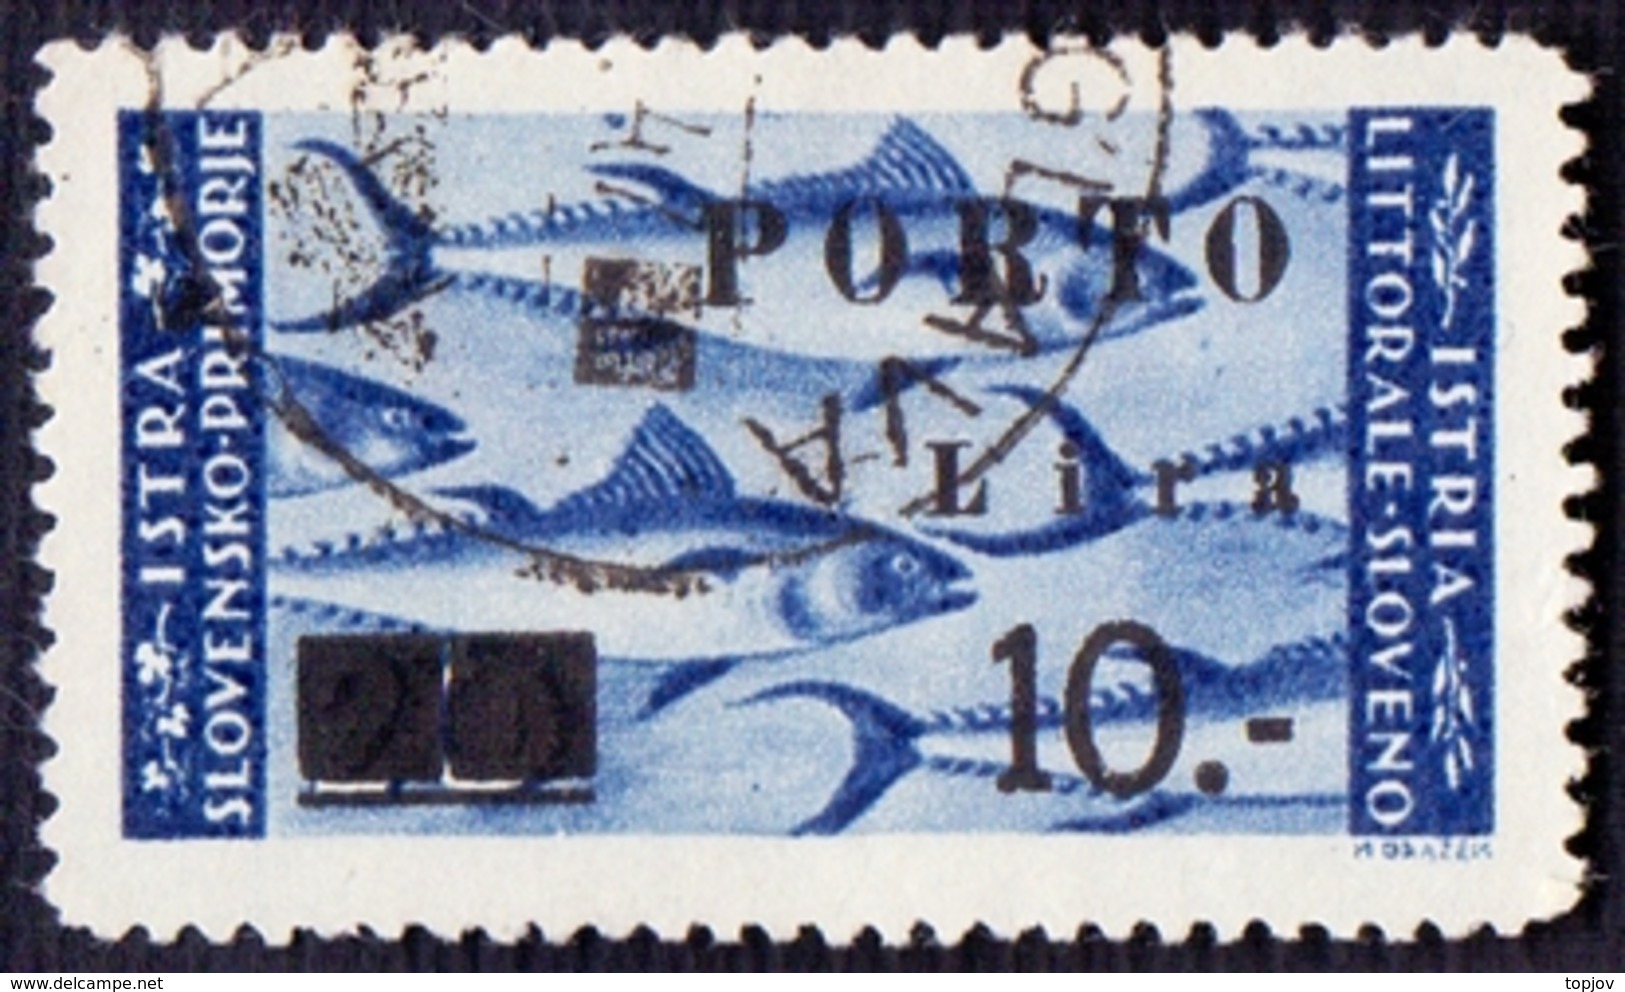 ISTRIA E LITORALE SLOVENO - SEGNATASSE PORTO  - Sasson. 17B  Cifre SOTTILI - Used - 1946 - RARE - Occup. Iugoslava: Istria